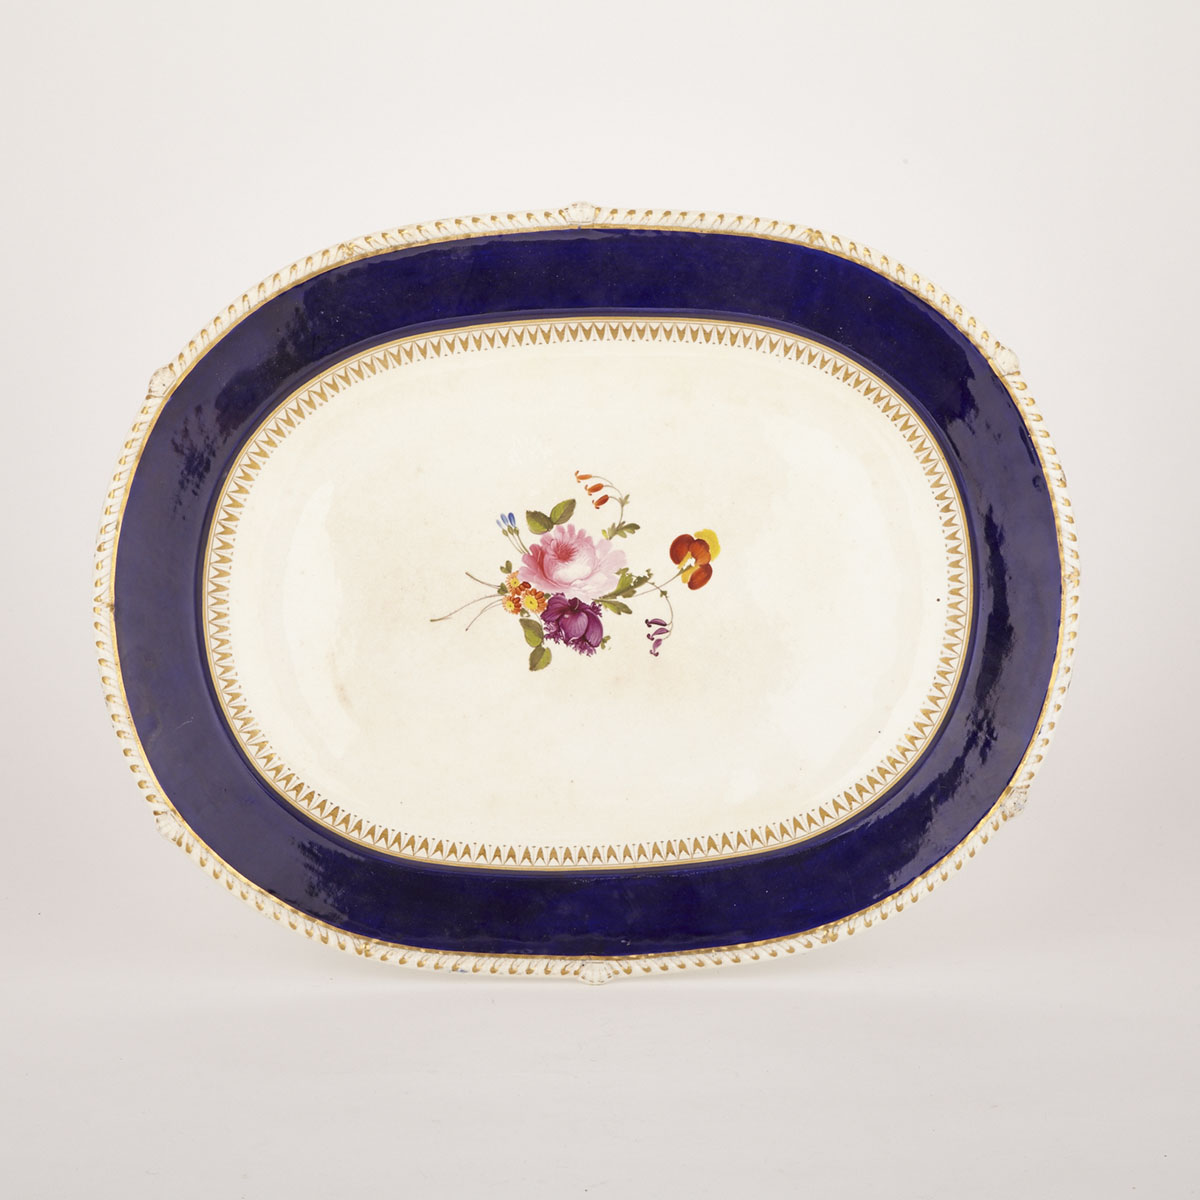 Bloor Derby Blue Banded Oval Platter, c.1820-40